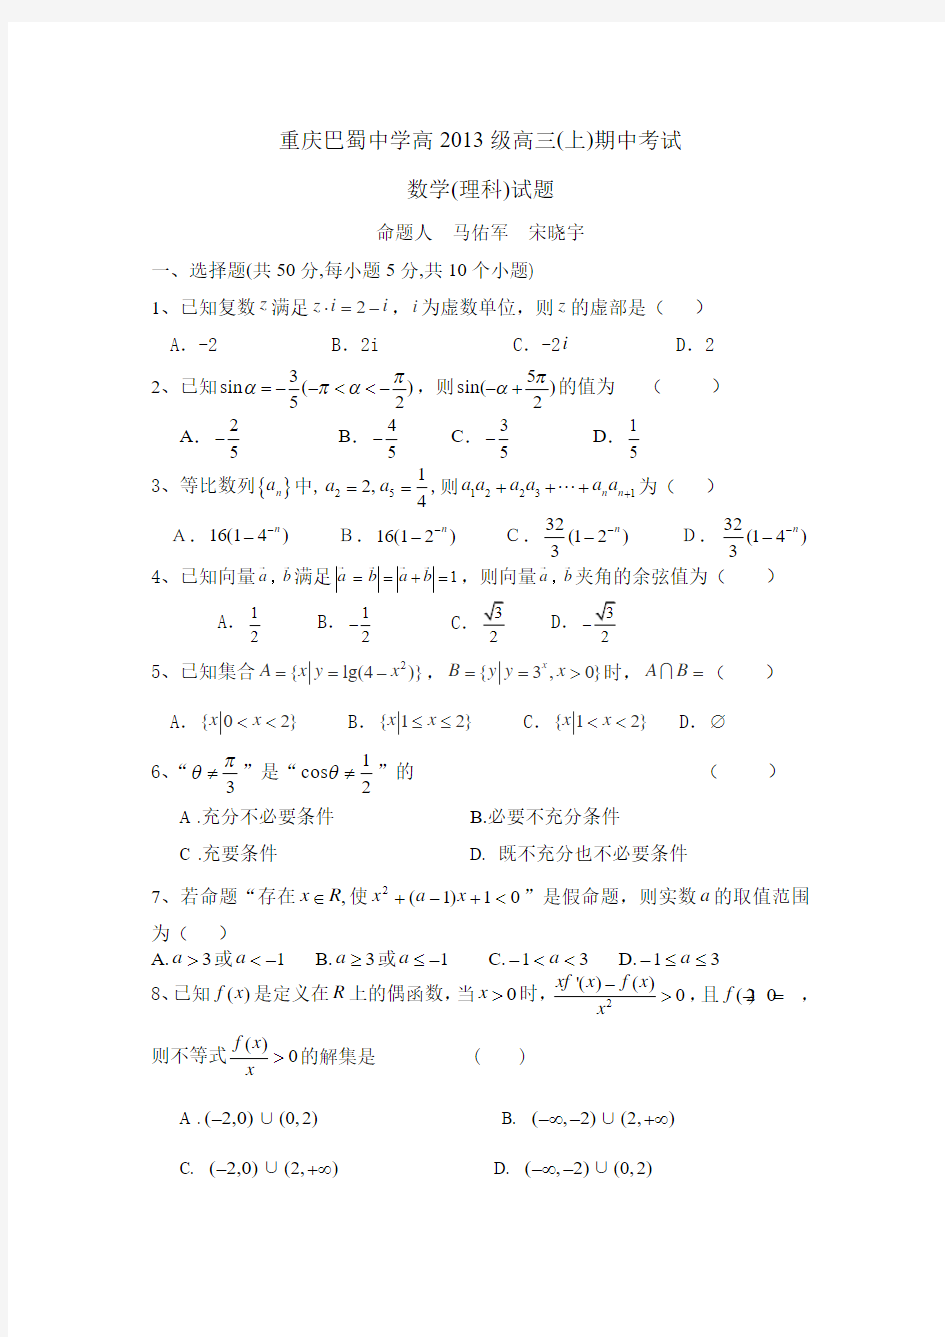 巴蜀中学高2013级12-13学年(上)半期试题——数学理